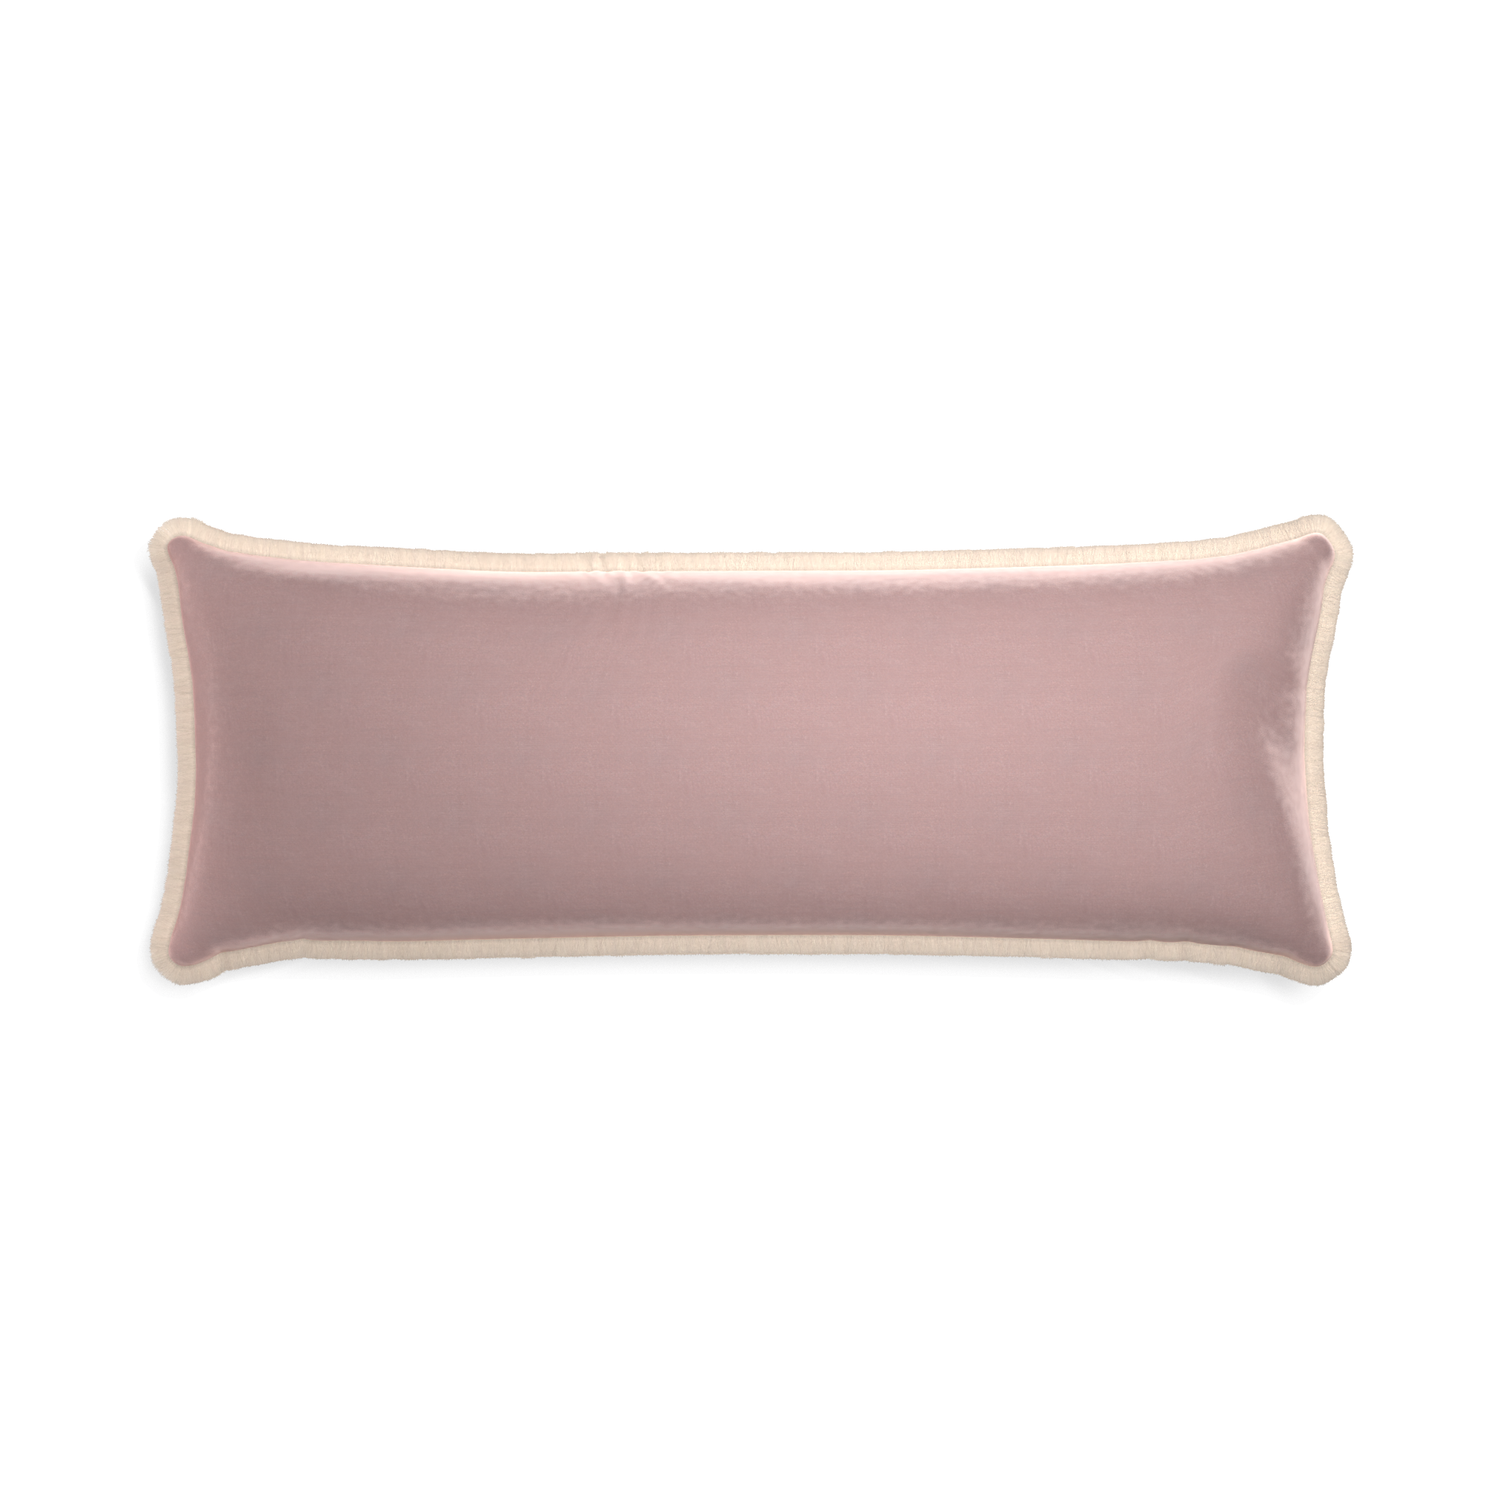 Xl-lumbar mauve velvet custom pillow with cream fringe on white background